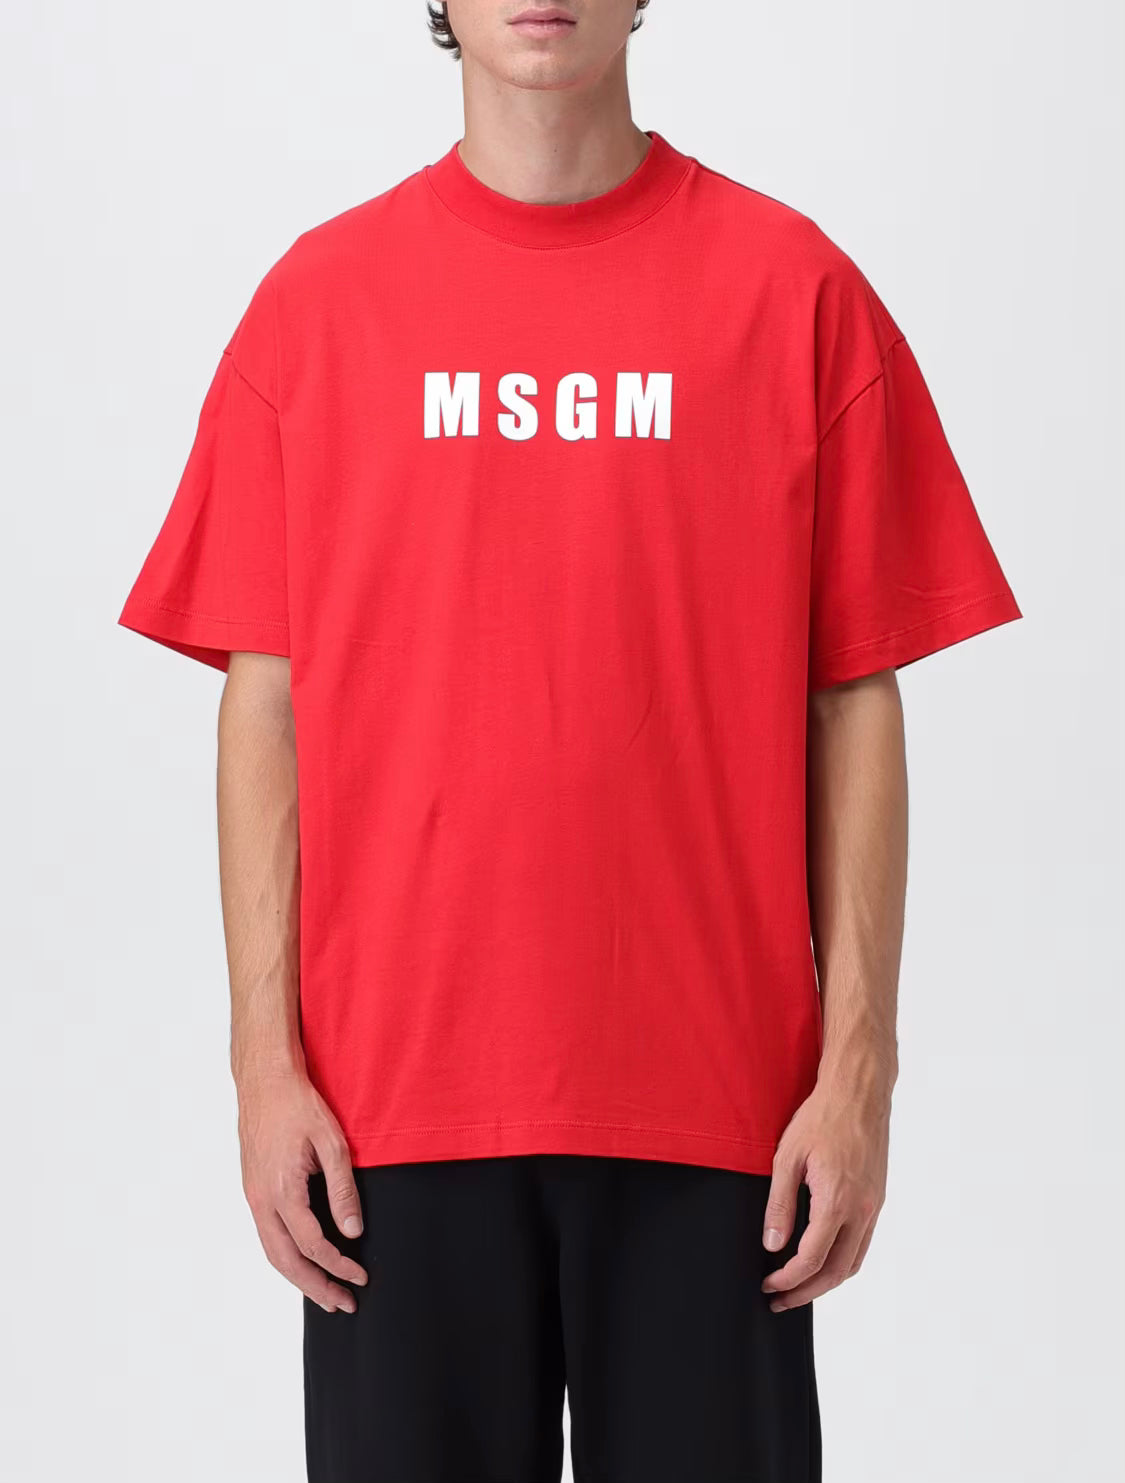 MSGM Rood T-shirt met MSGM logo